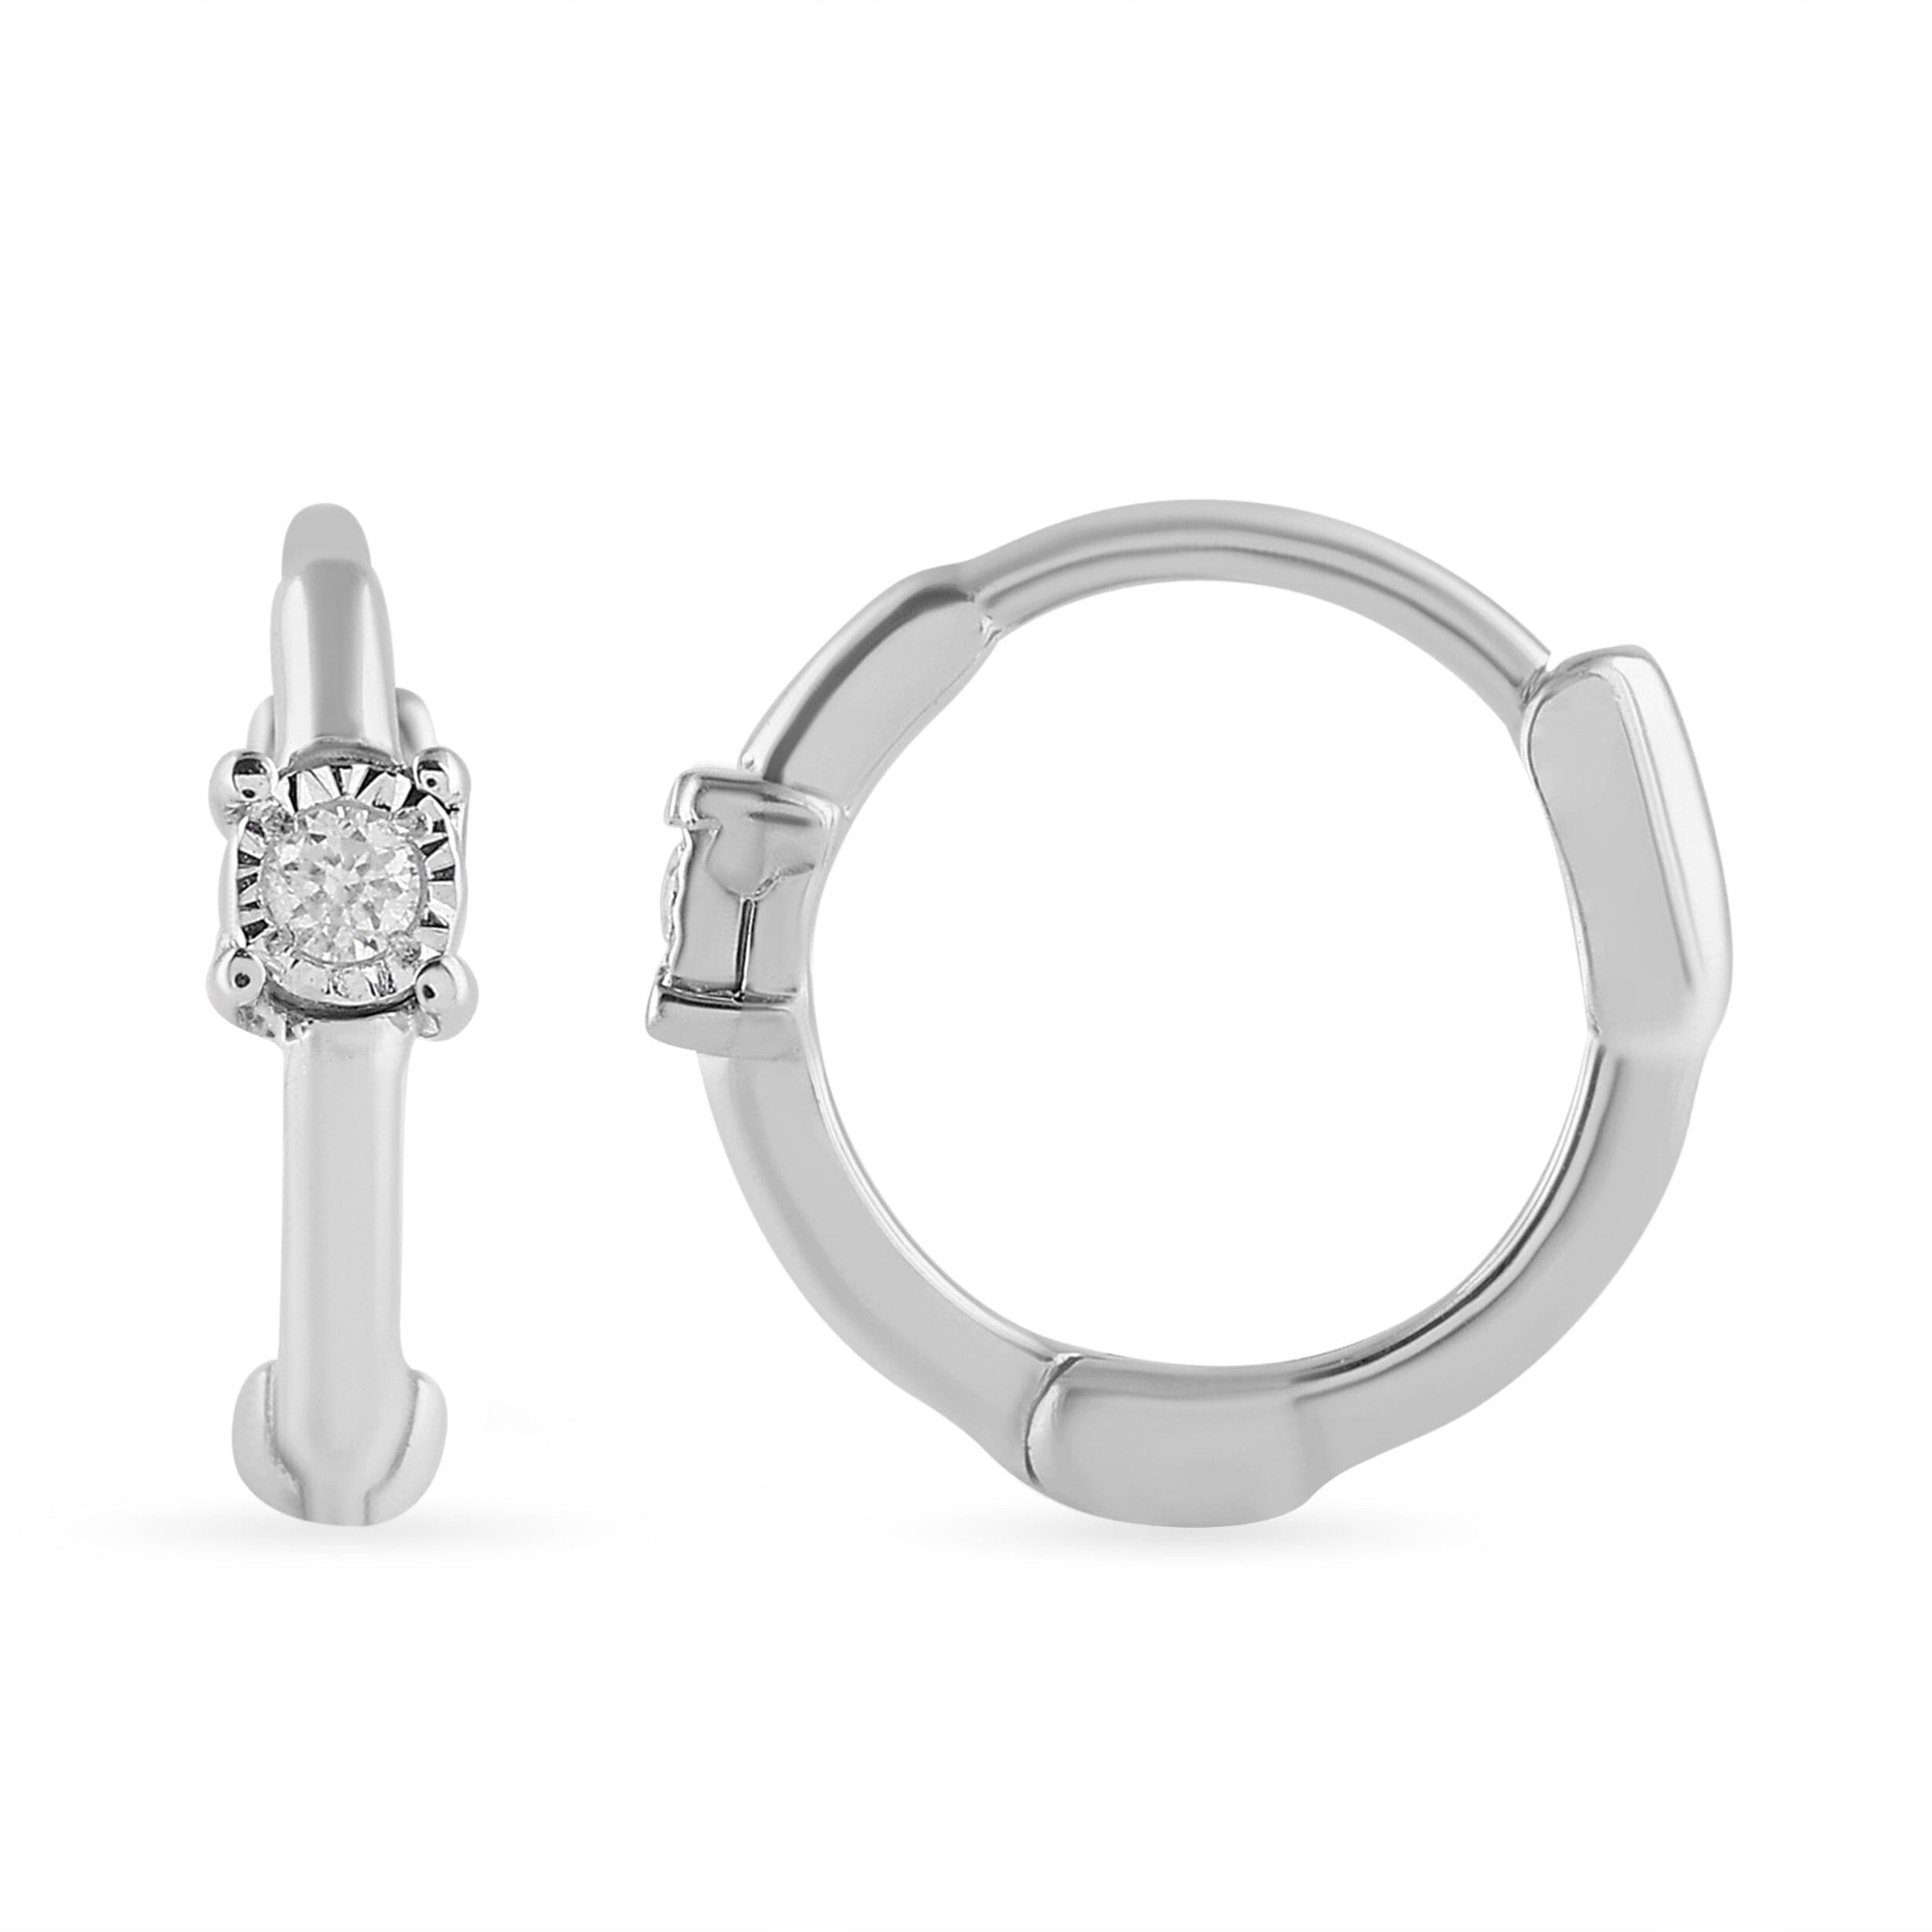 Diamond Set Huggie Hoop Earring in Sterling Silver Earrings Bevilles 